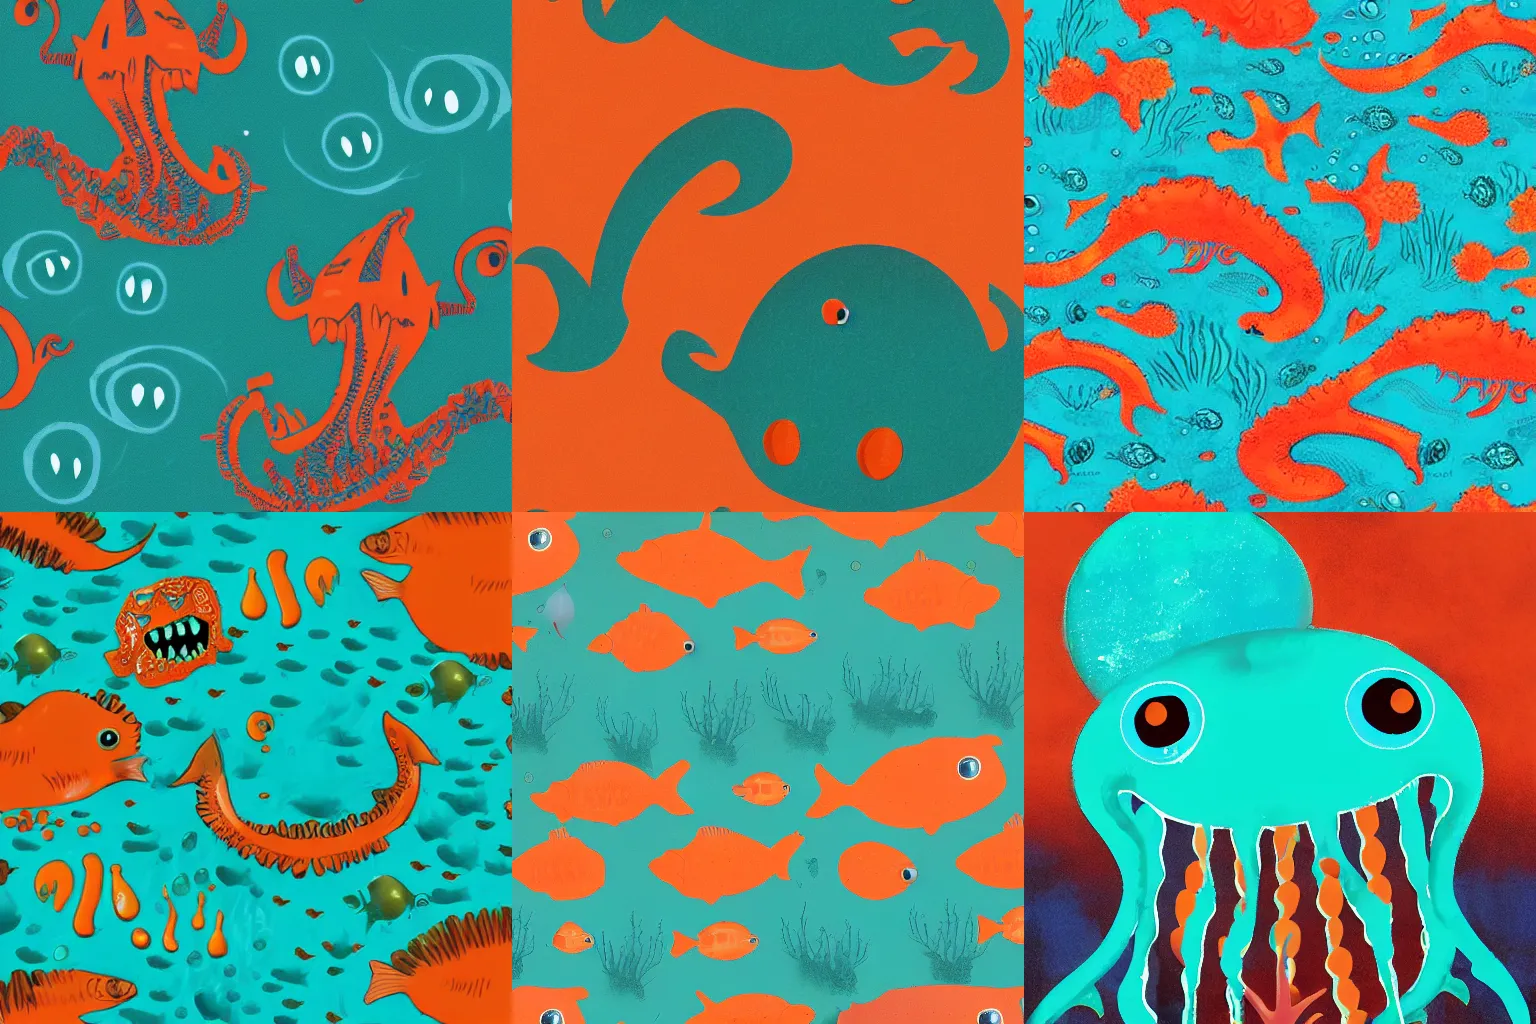 Prompt: underwater sea monster, teal and orange, horror